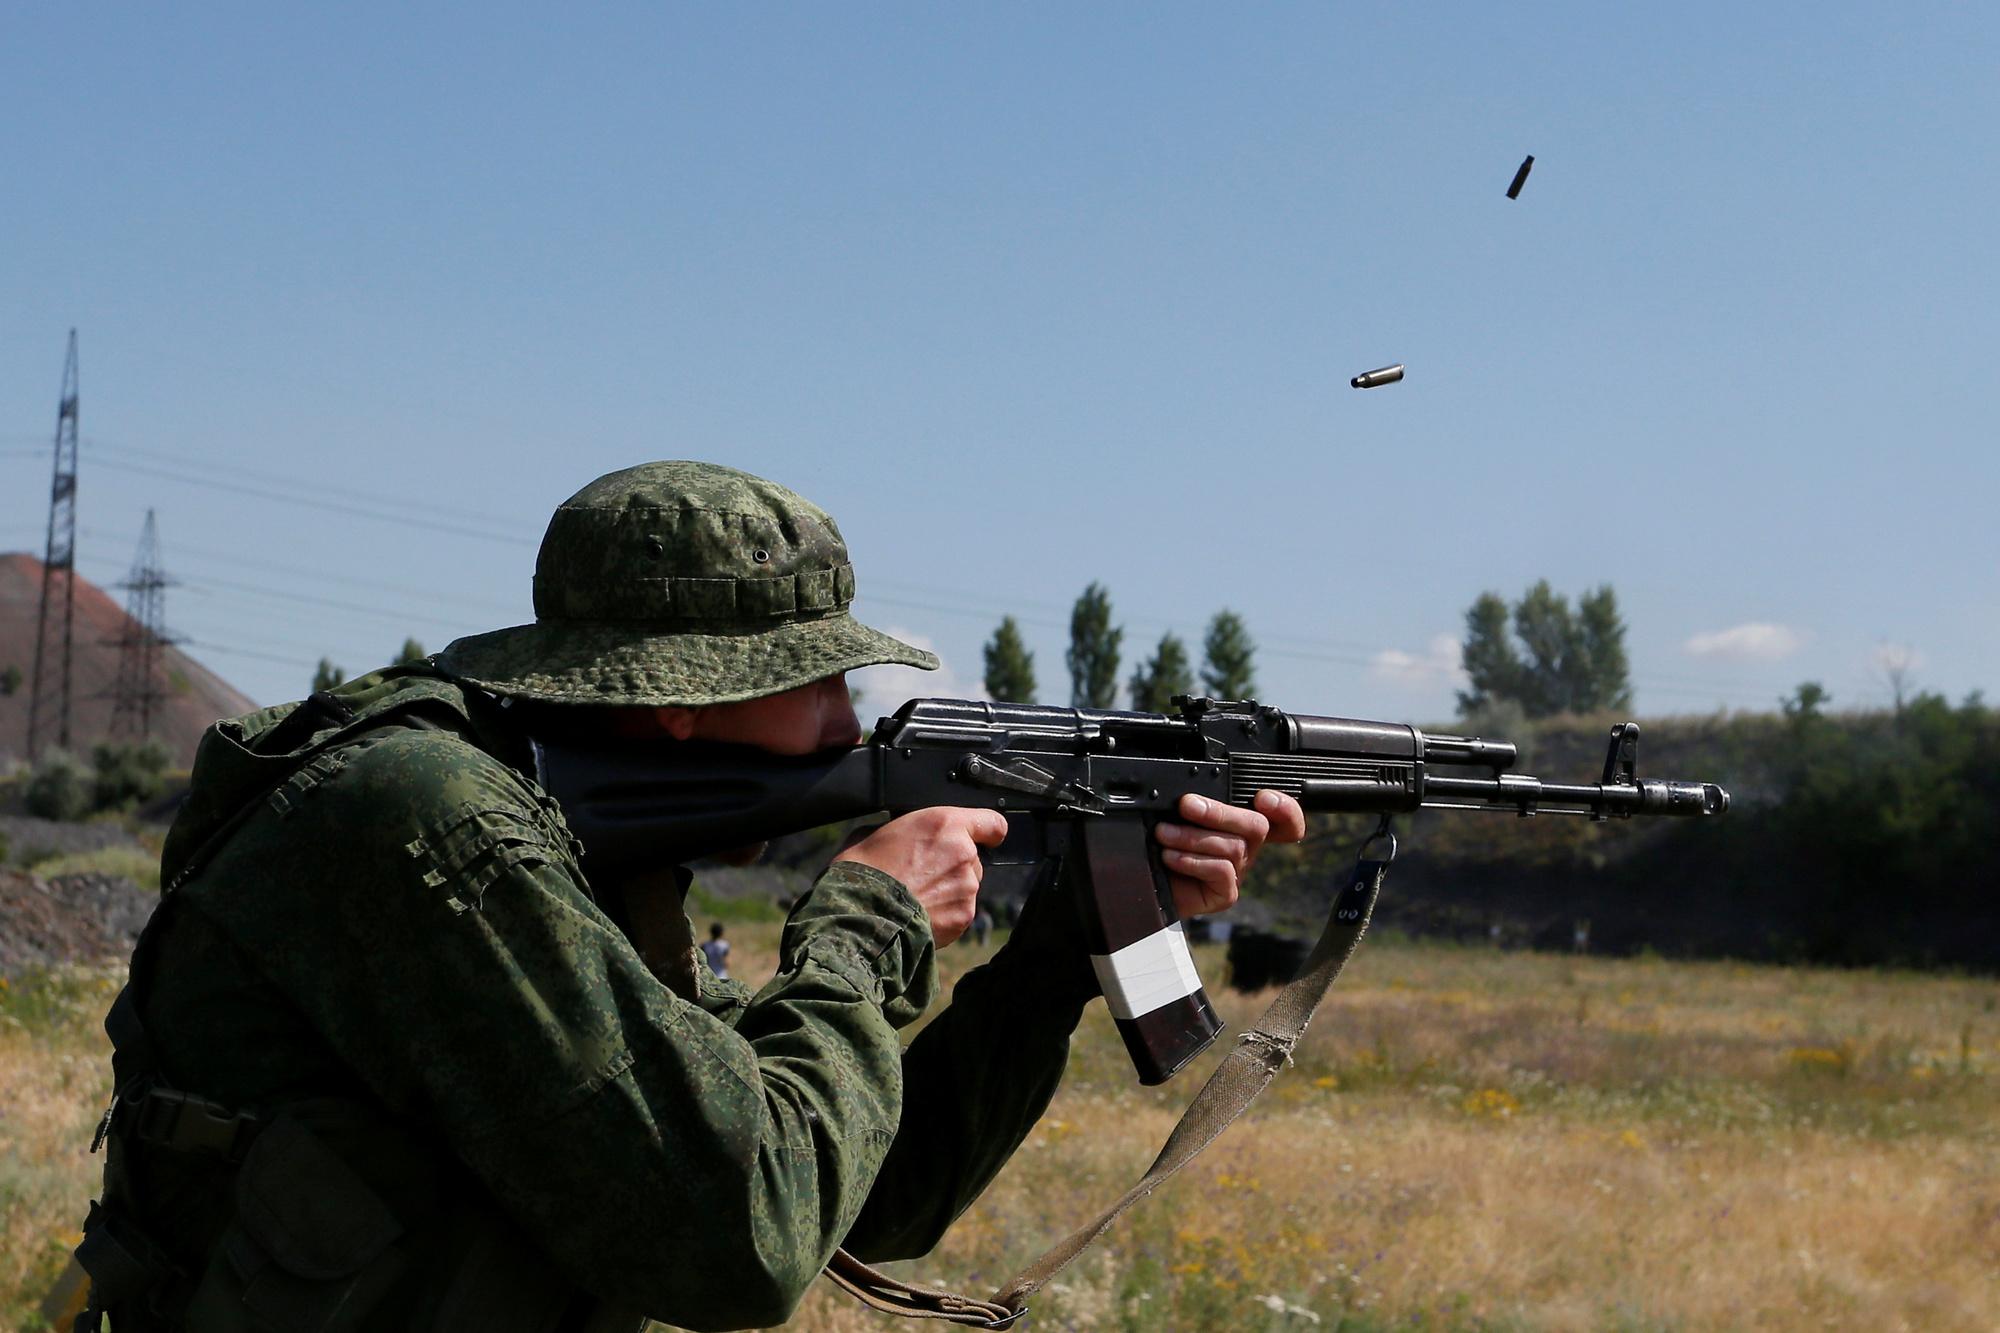 Schietoefening van milities in de zelfverklaarde Volksrepubliek Donetsk.